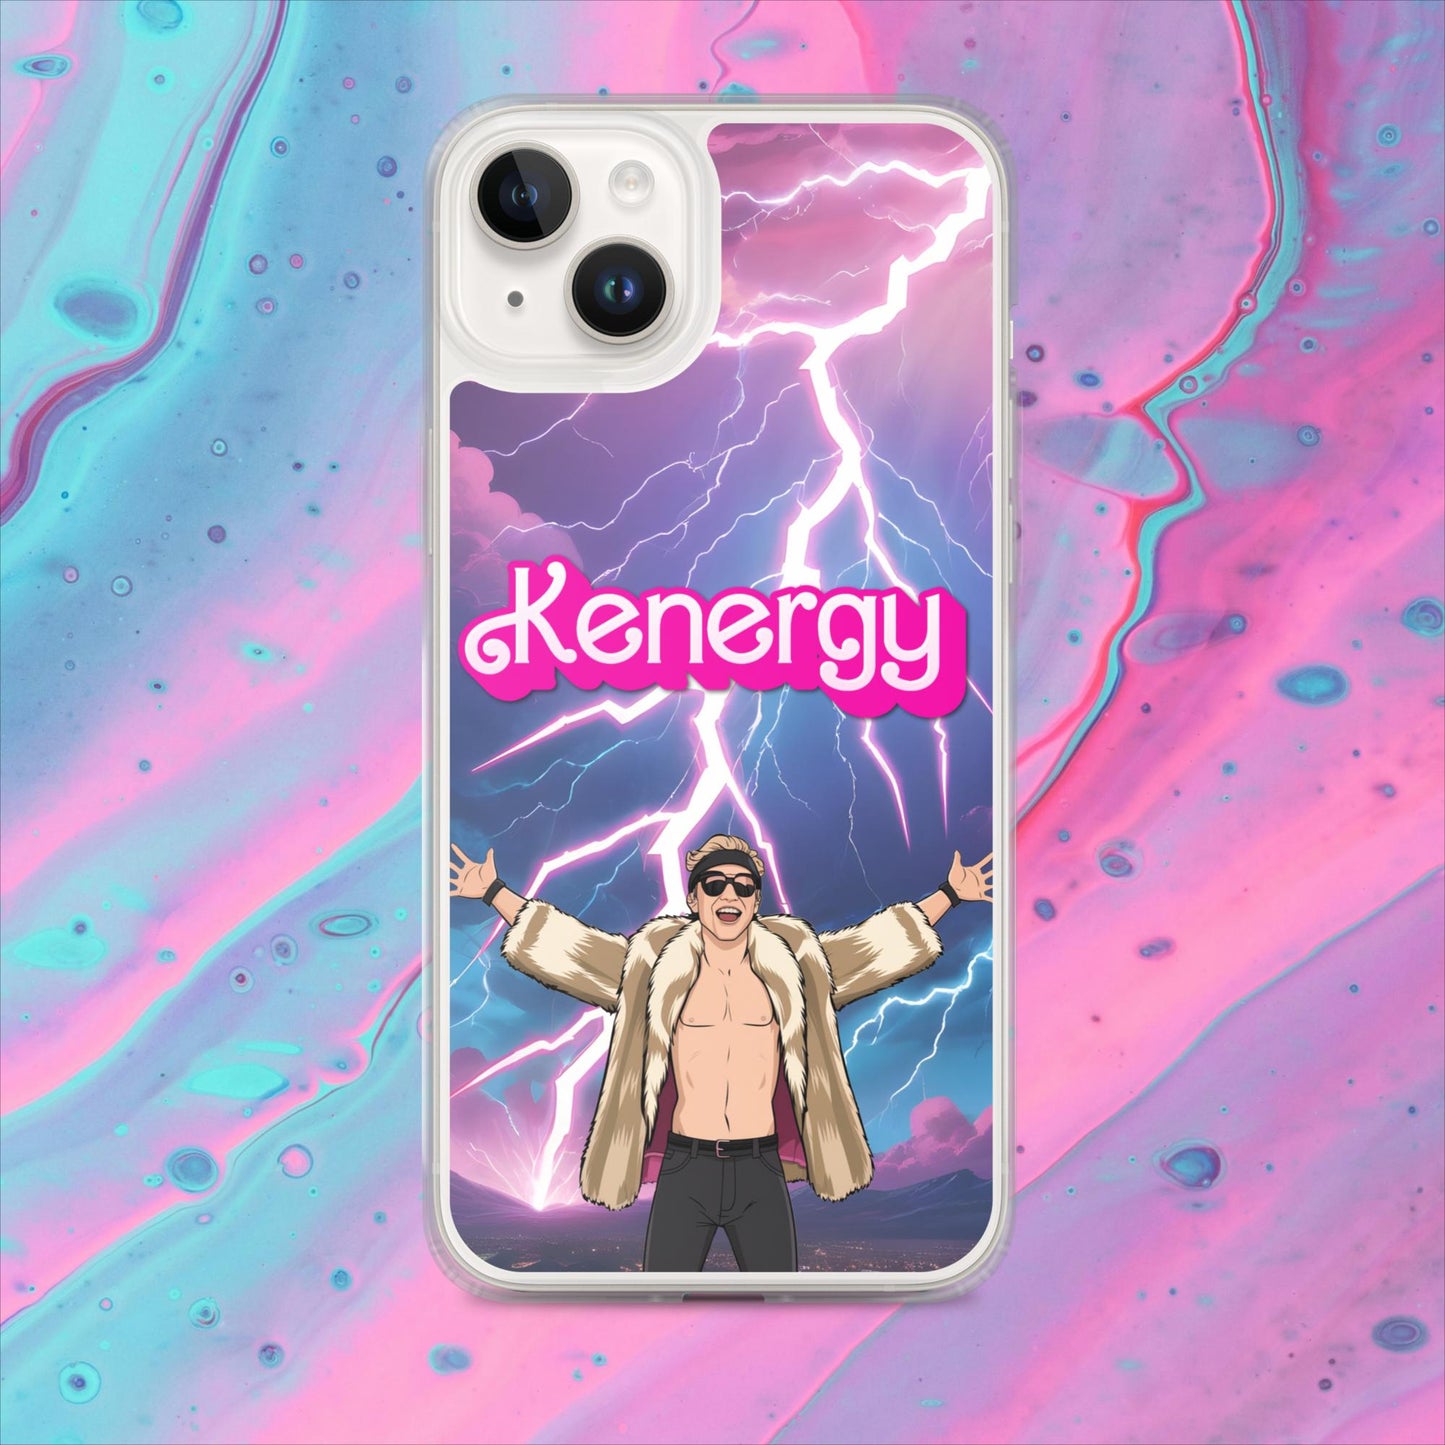 Kenergy Barbie Ryan Gosling Ken Clear Case for iPhone Next Cult Brand Barbie, Ken, Kenergy, Movies, Ryan Gosling